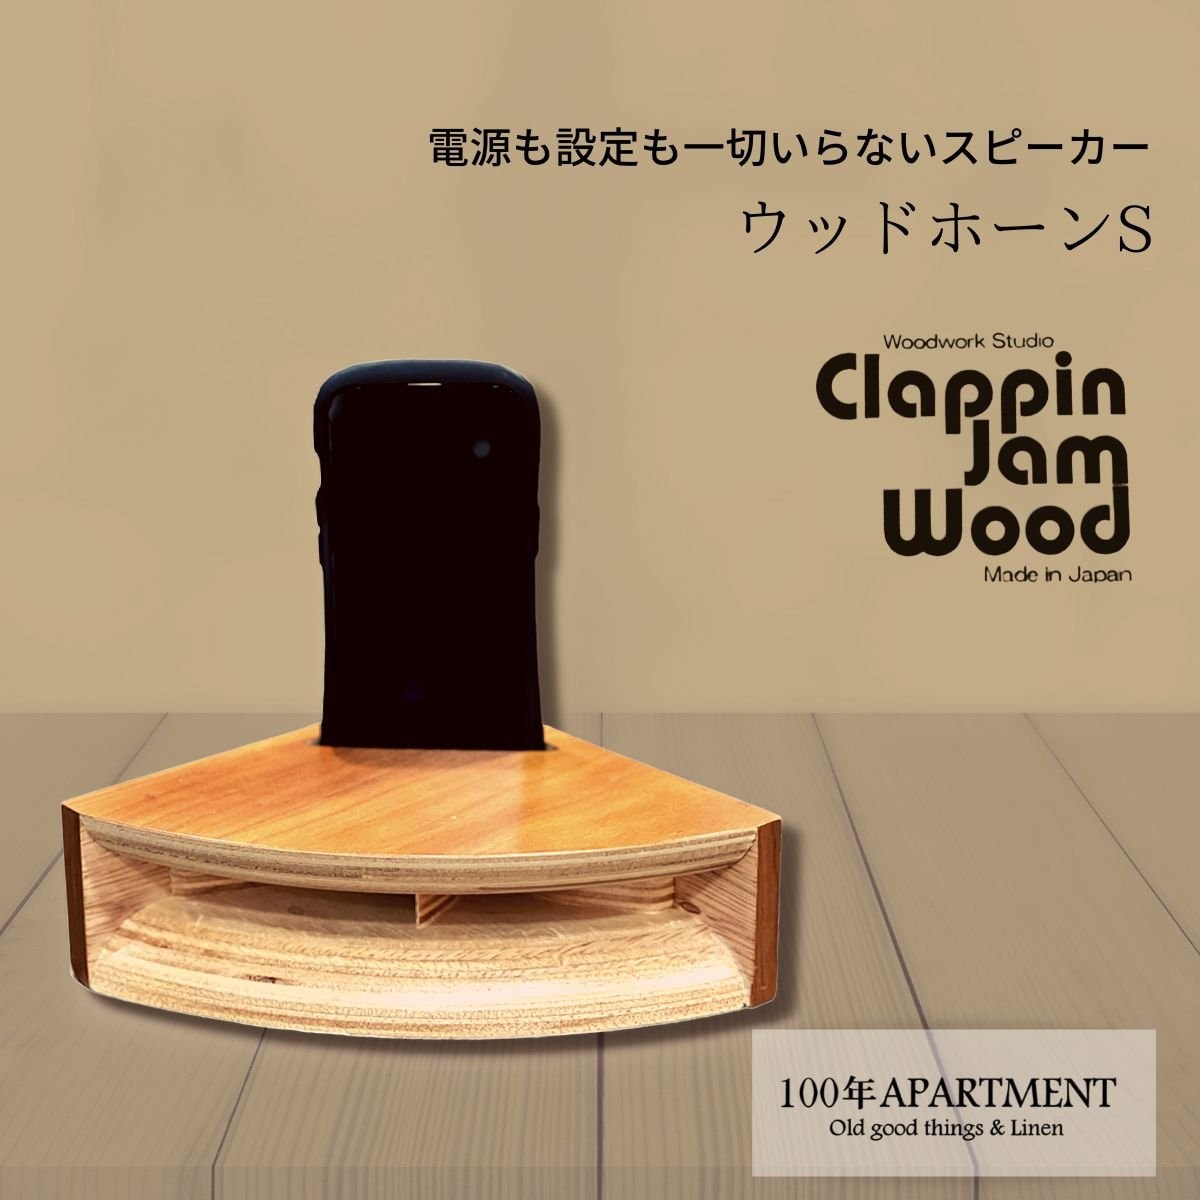 【TVでも紹介された】ウッドホーンS（ブラックチェリー）|スマートホンを差し込むだけ|woodwork Studio Clappin Jam Wood